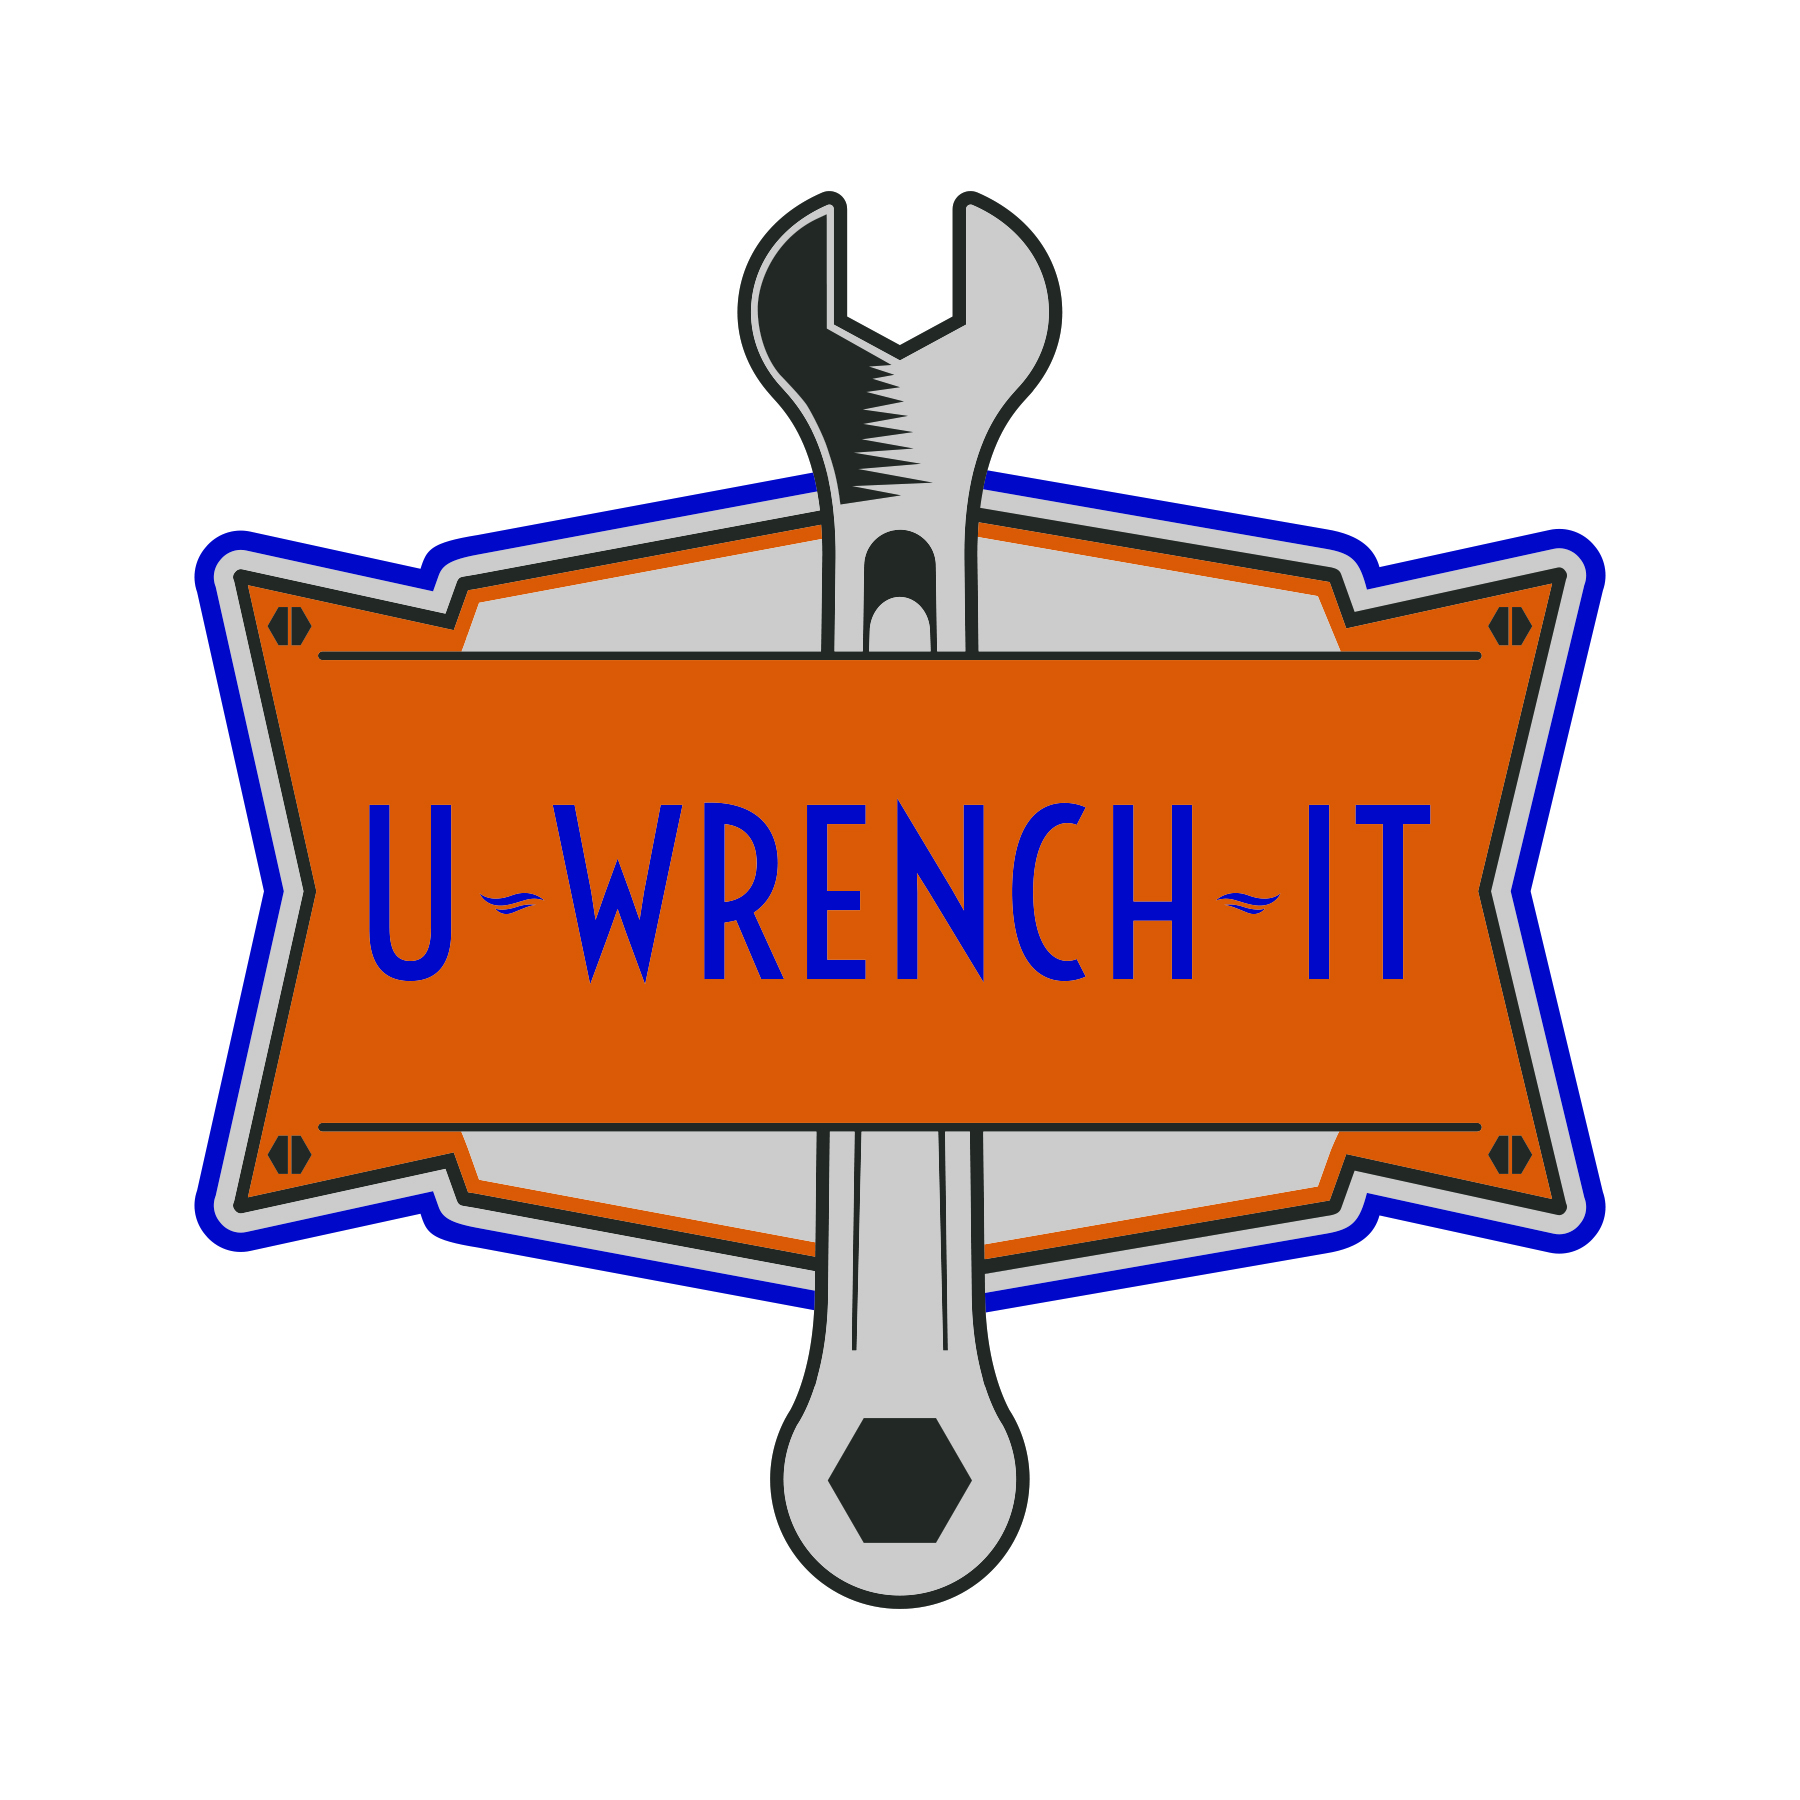 U-Wrench-It logo